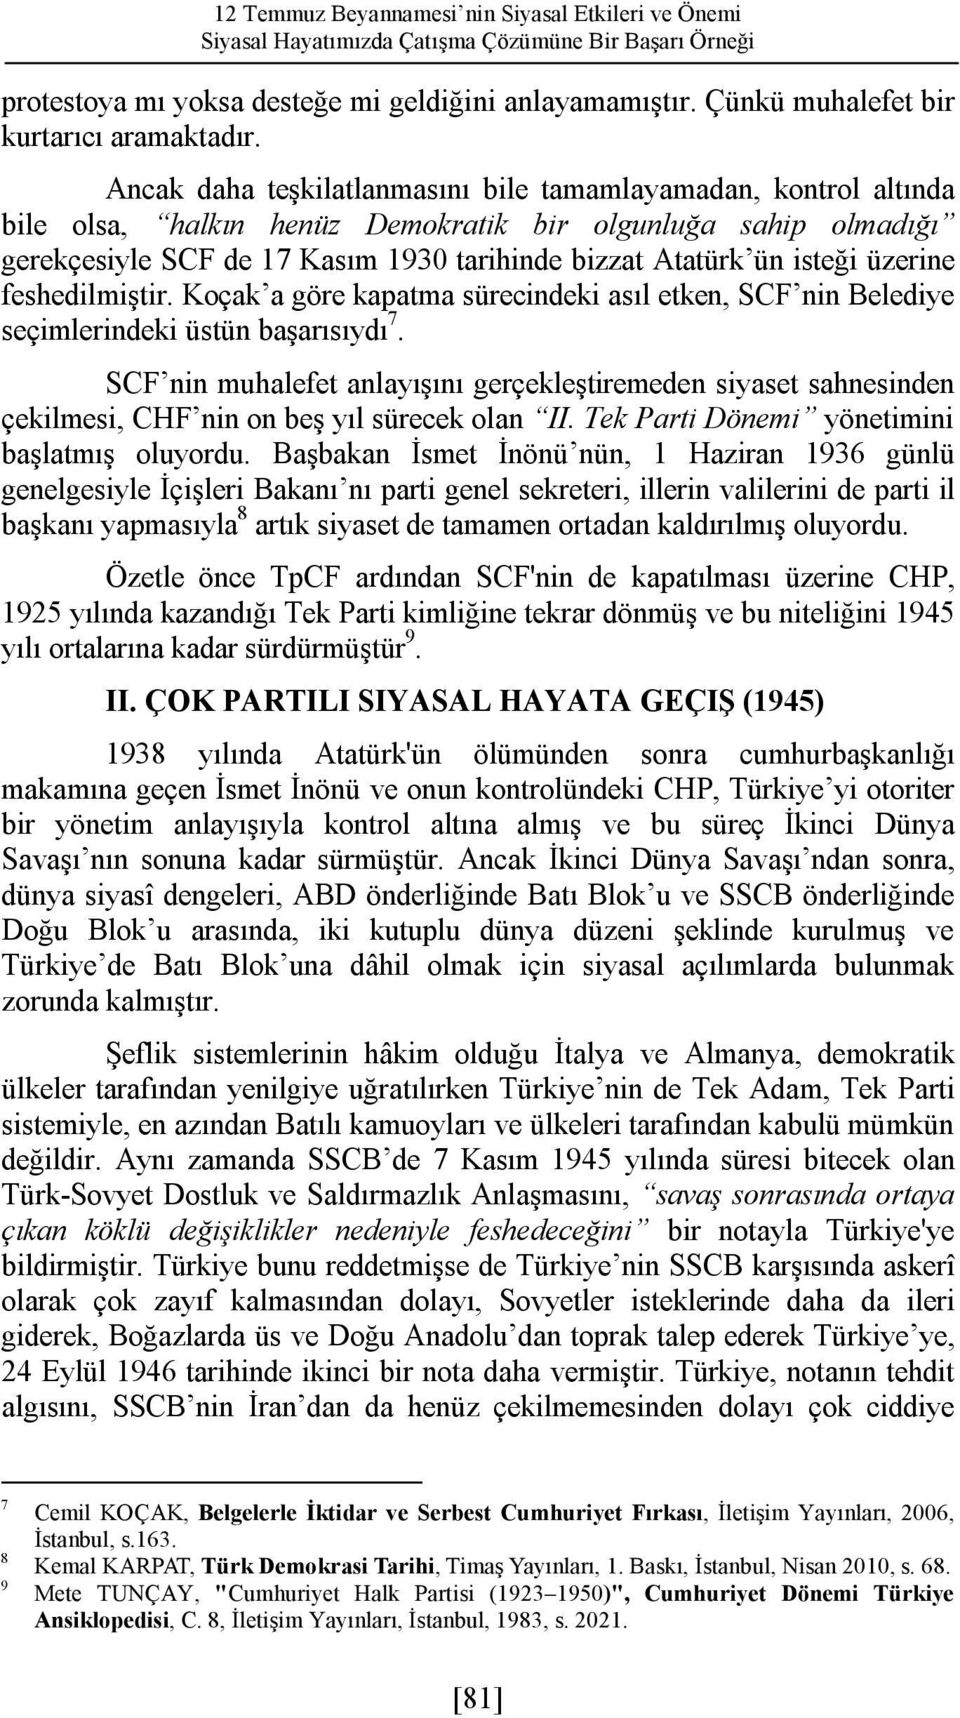 Ancak daha teşkilatlanmasını bile tamamlayamadan, kontrol altında bile olsa, halkın henüz Demokratik bir olgunluğa sahip olmadığı gerekçesiyle SCF de 17 Kasım 1930 tarihinde bizzat Atatürk ün isteği